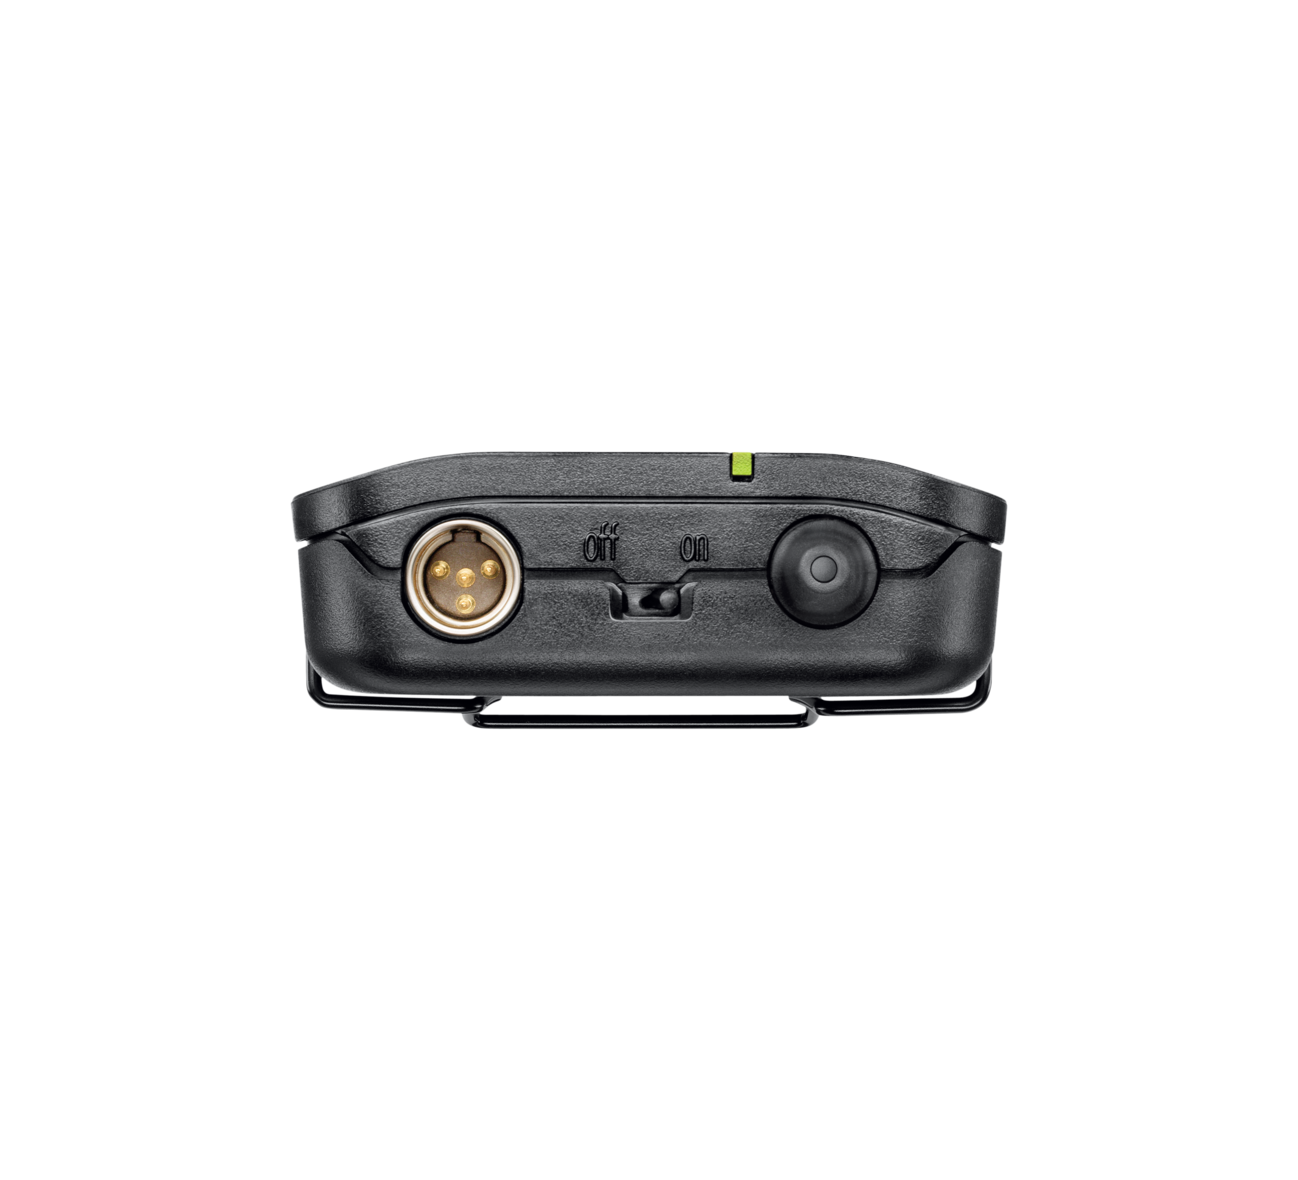 SHURE BLX14/SM31 Sistema con micrófono de diadema cardioide para cantante, Fitness Transmisor de cuerpo ligero, Repelente a la humedad. 596 a 616 MHz